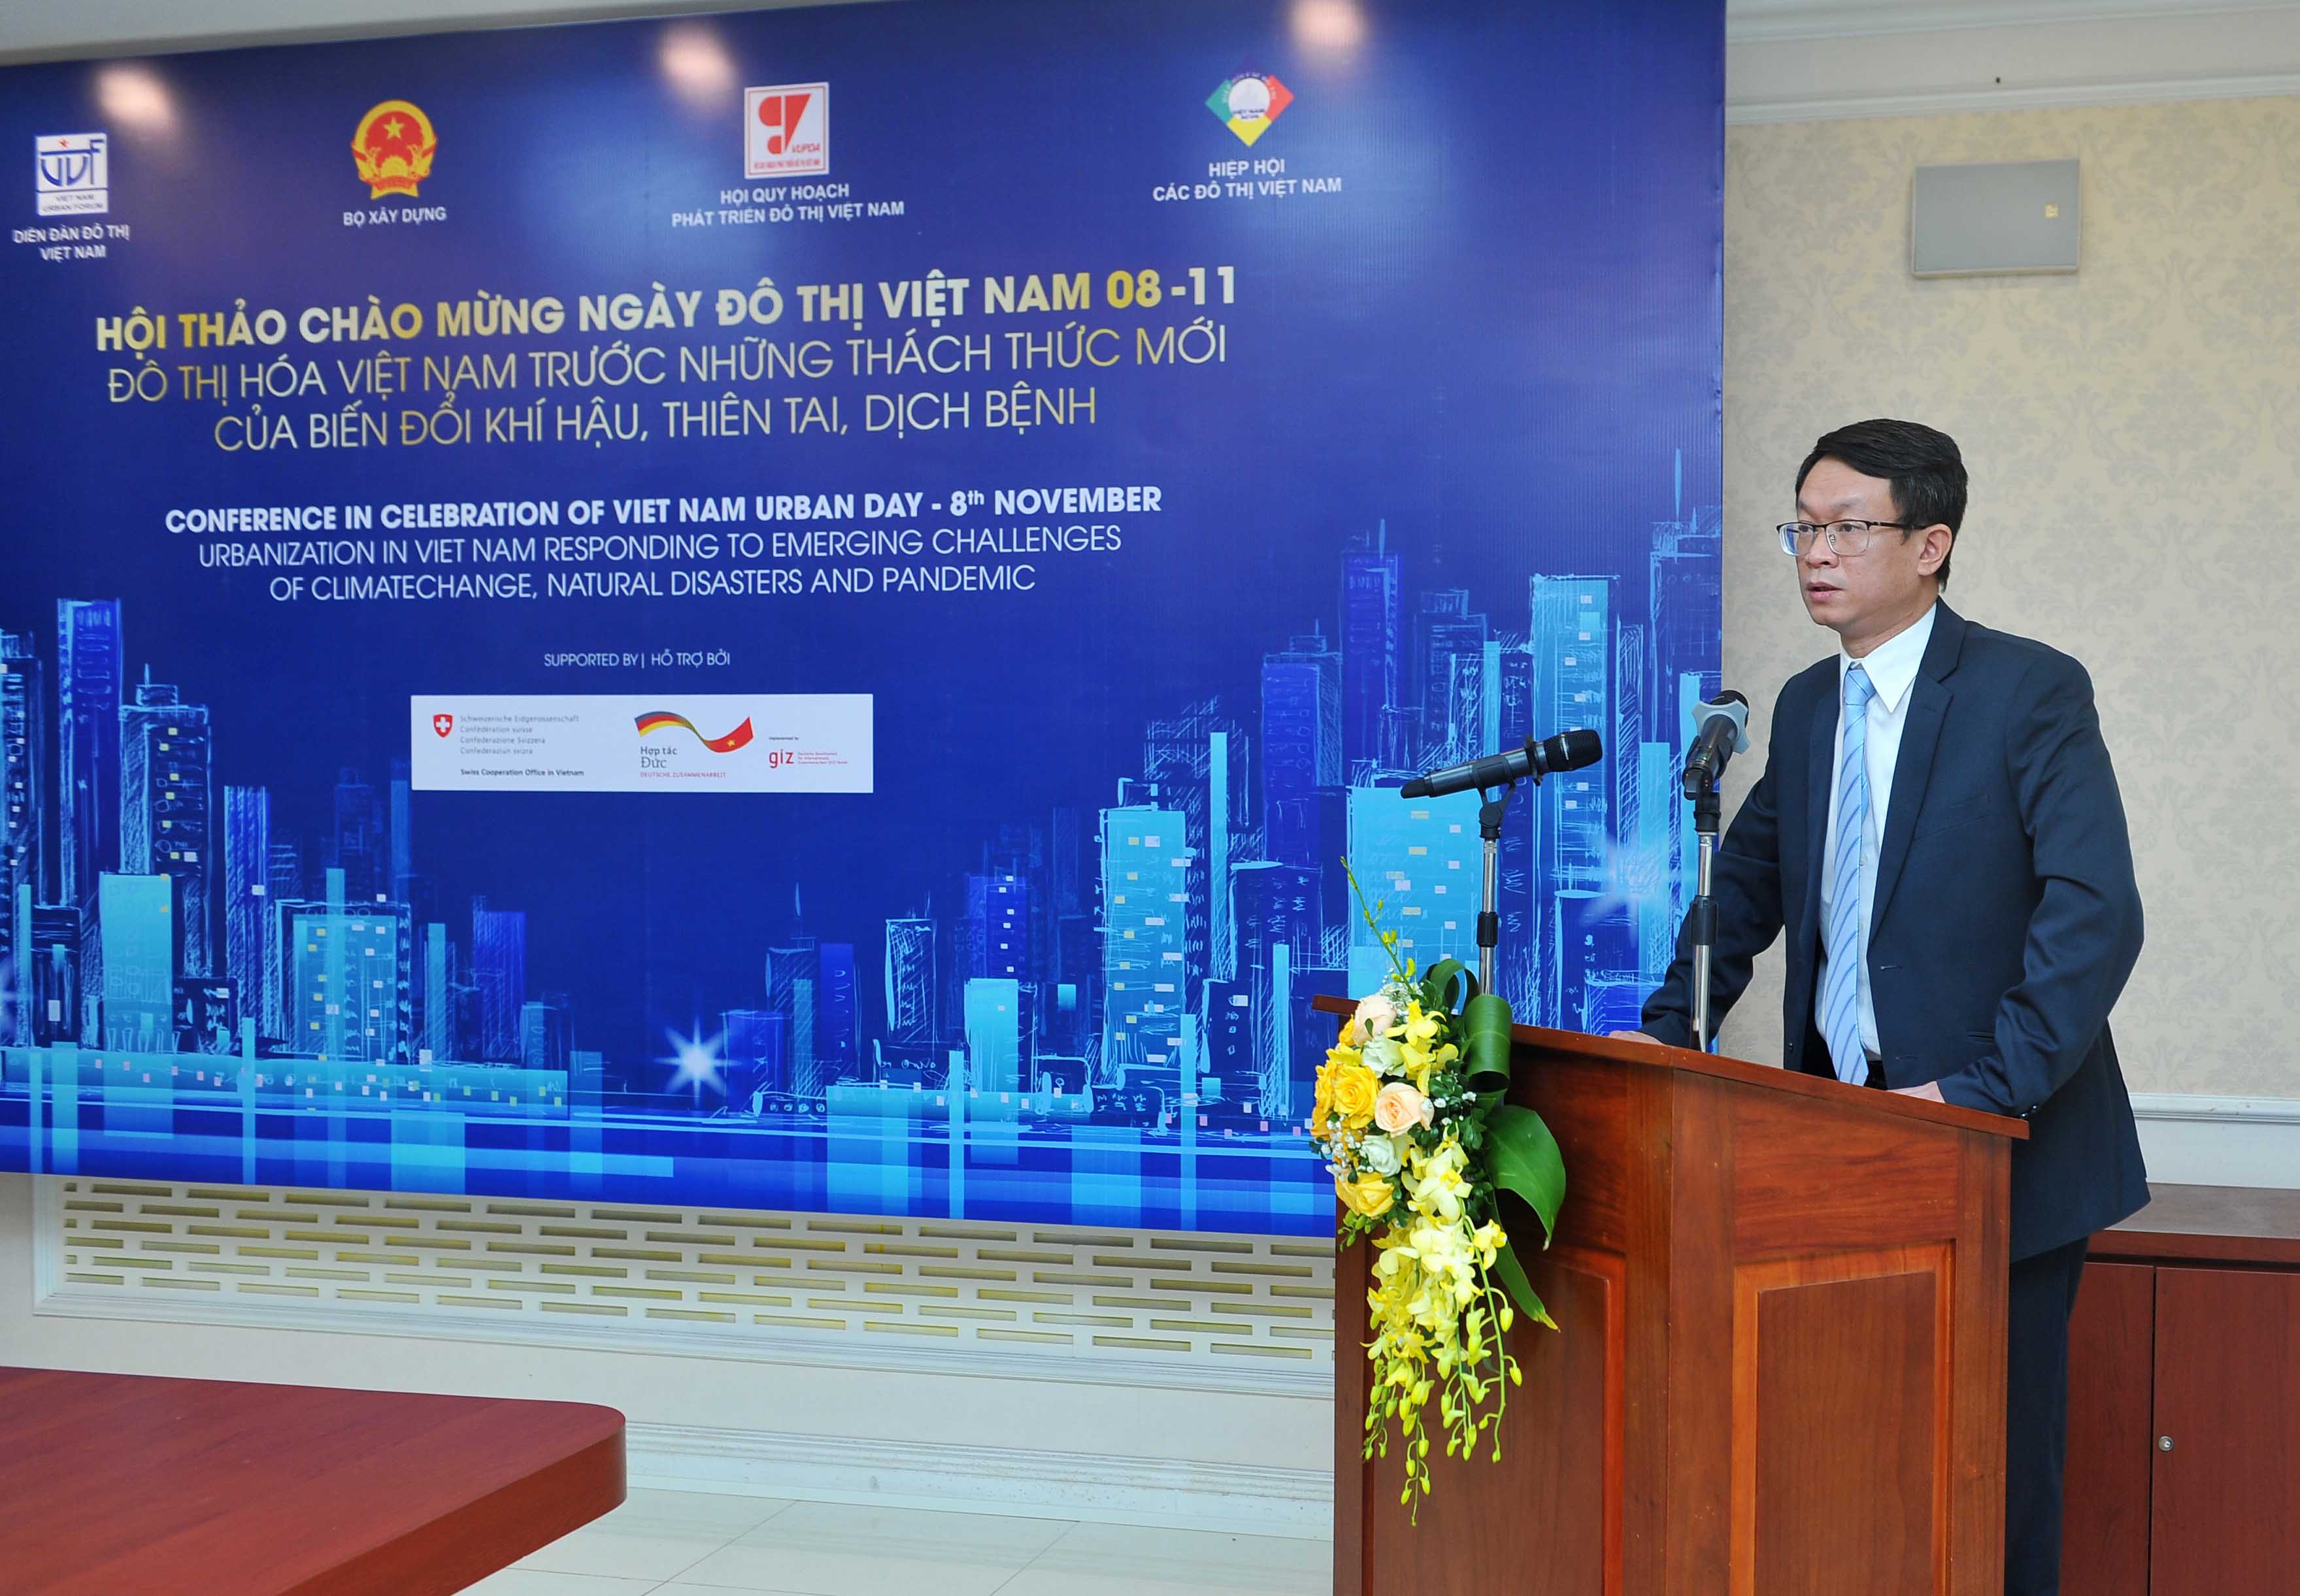 Hội thảo trưc tuyến - Đô thị hóa Việt Nam trước những thách thức mới của biến đổi khí hậu, thiên tai, dịch bệnh.